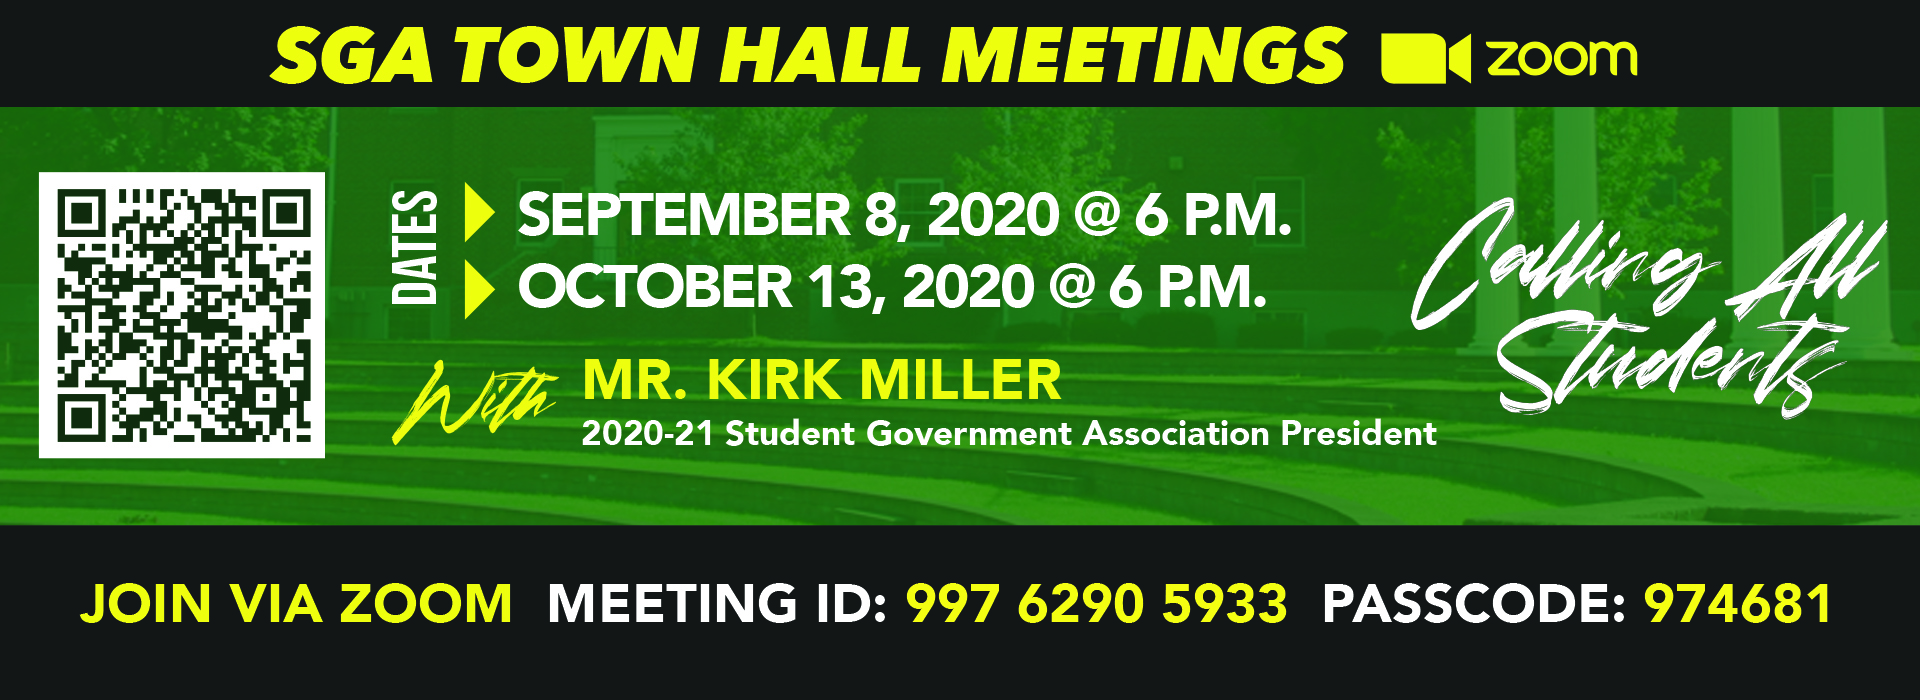 SGA Town Hall meeting flyer